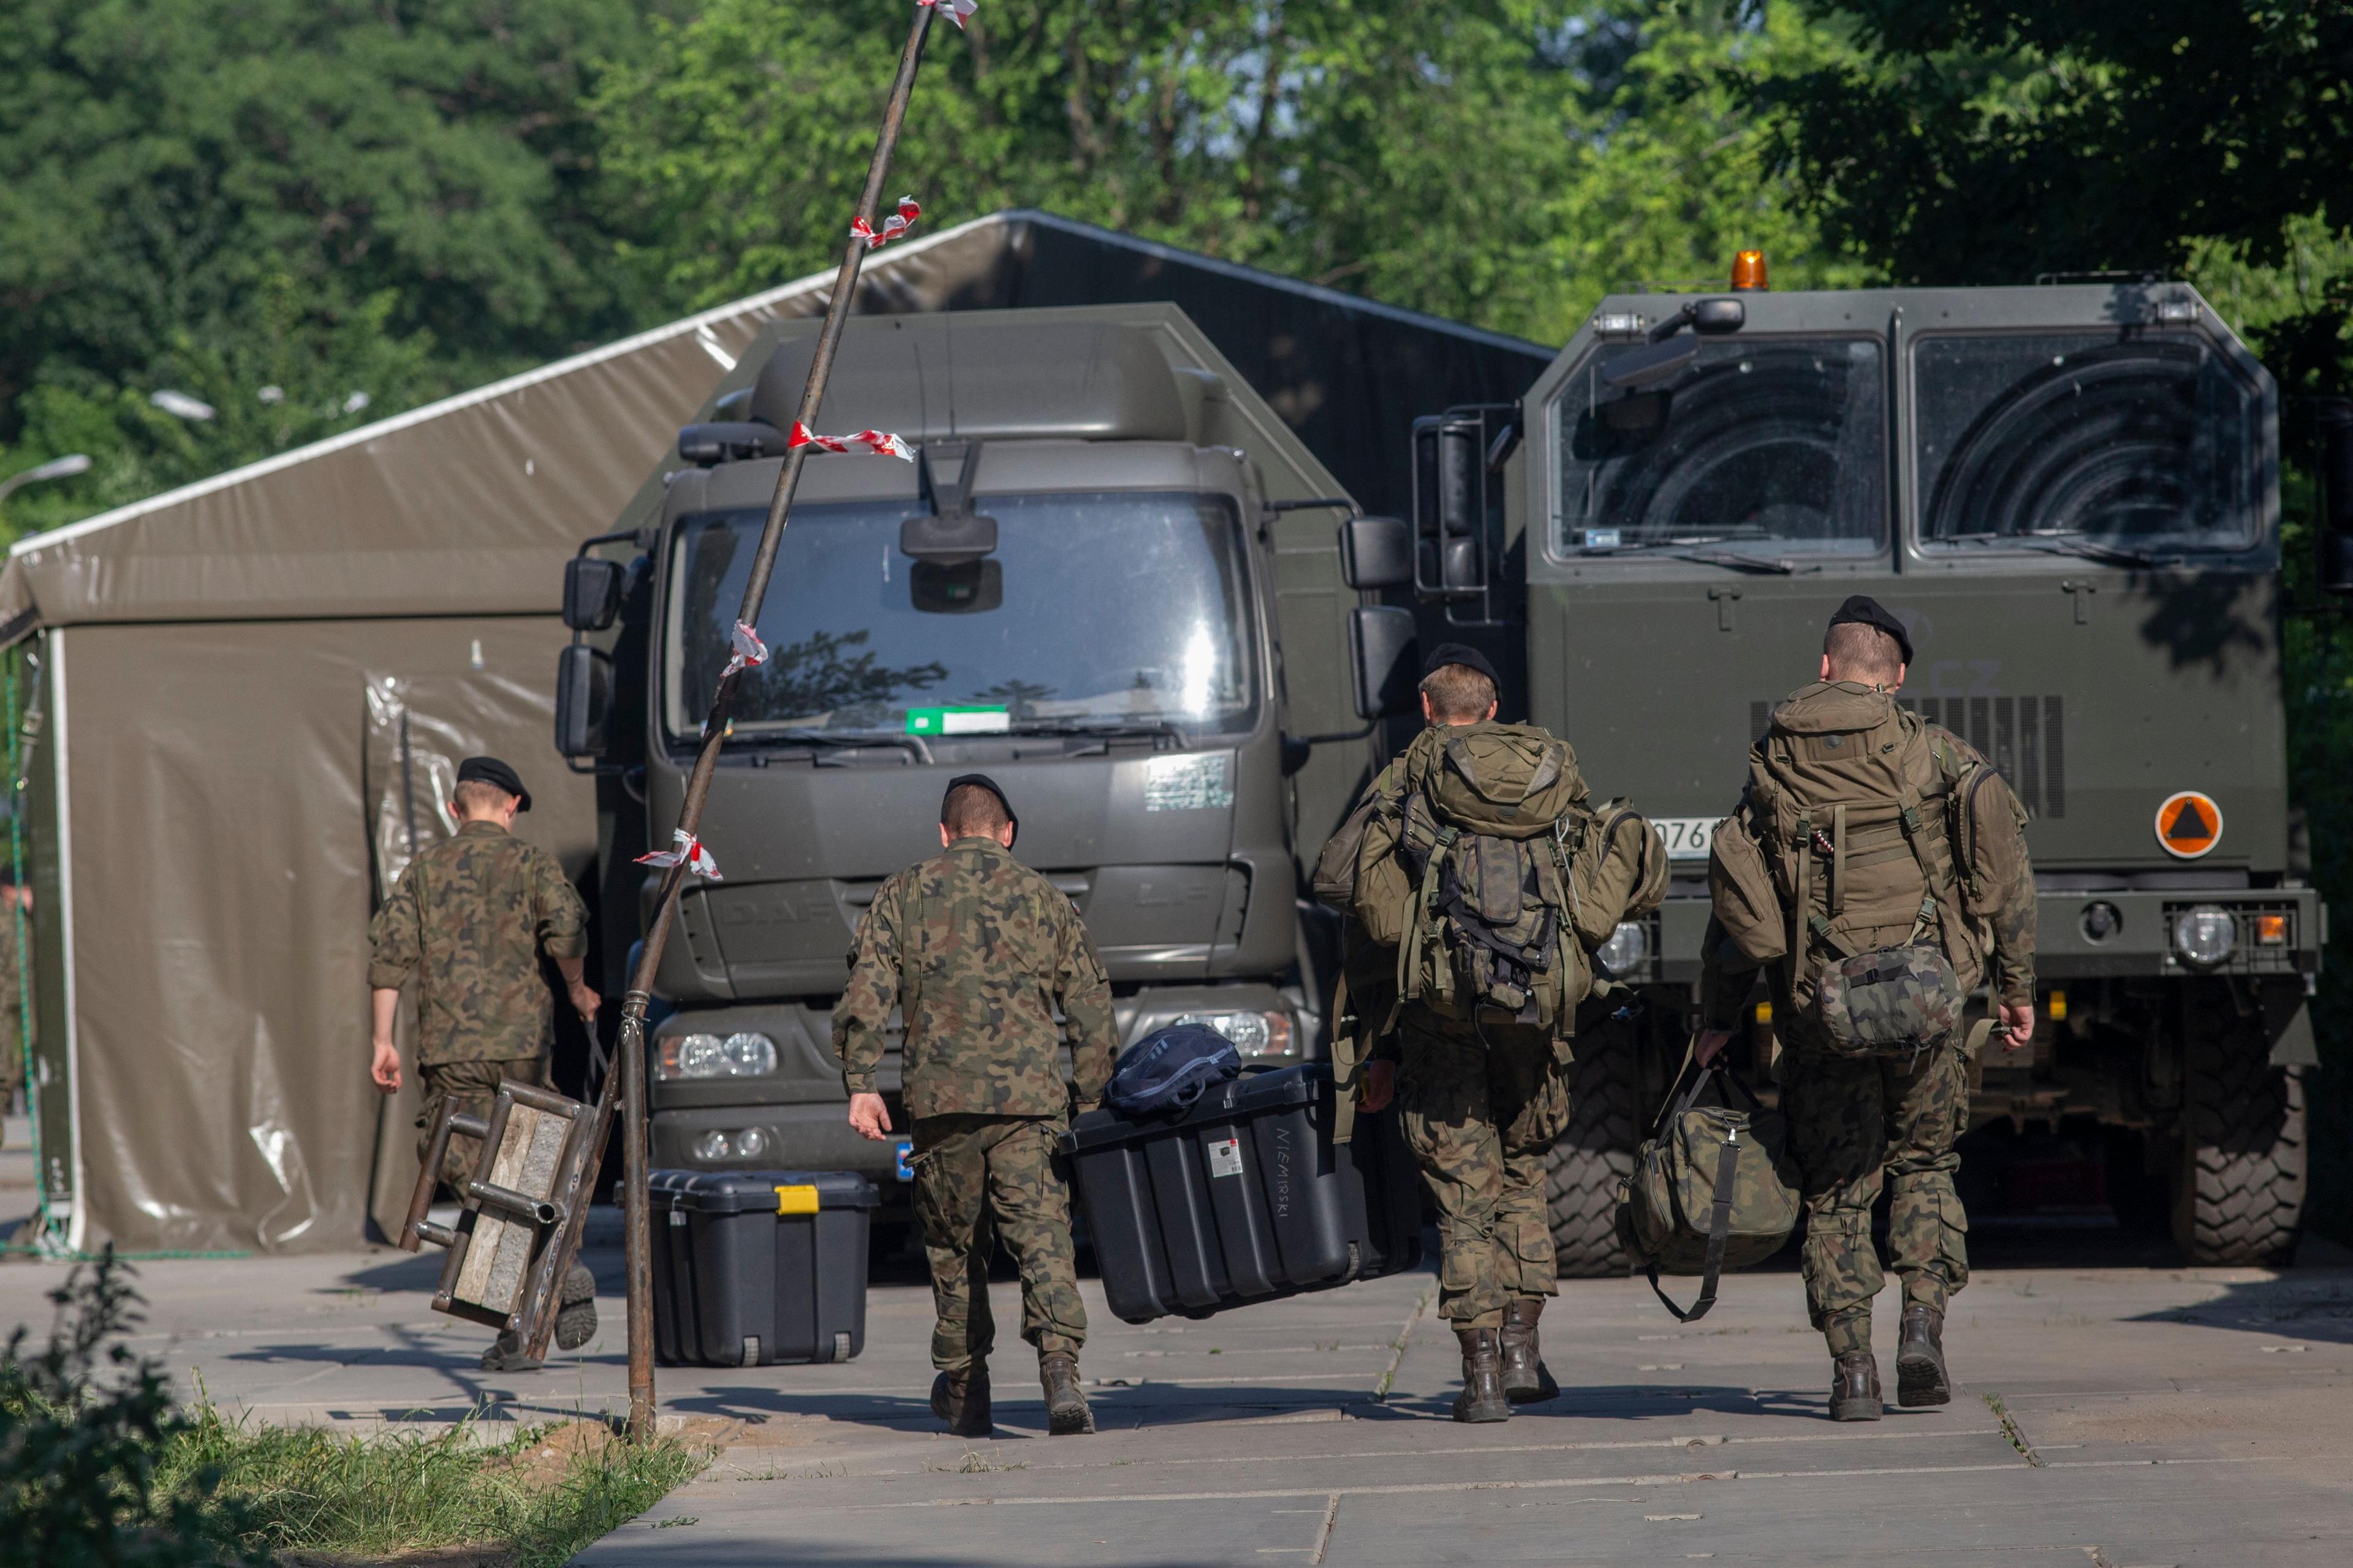 Żołnierze w mundurach idący do wojskowych ciężarówek w Białowieży (zdjęcie od tyłu)